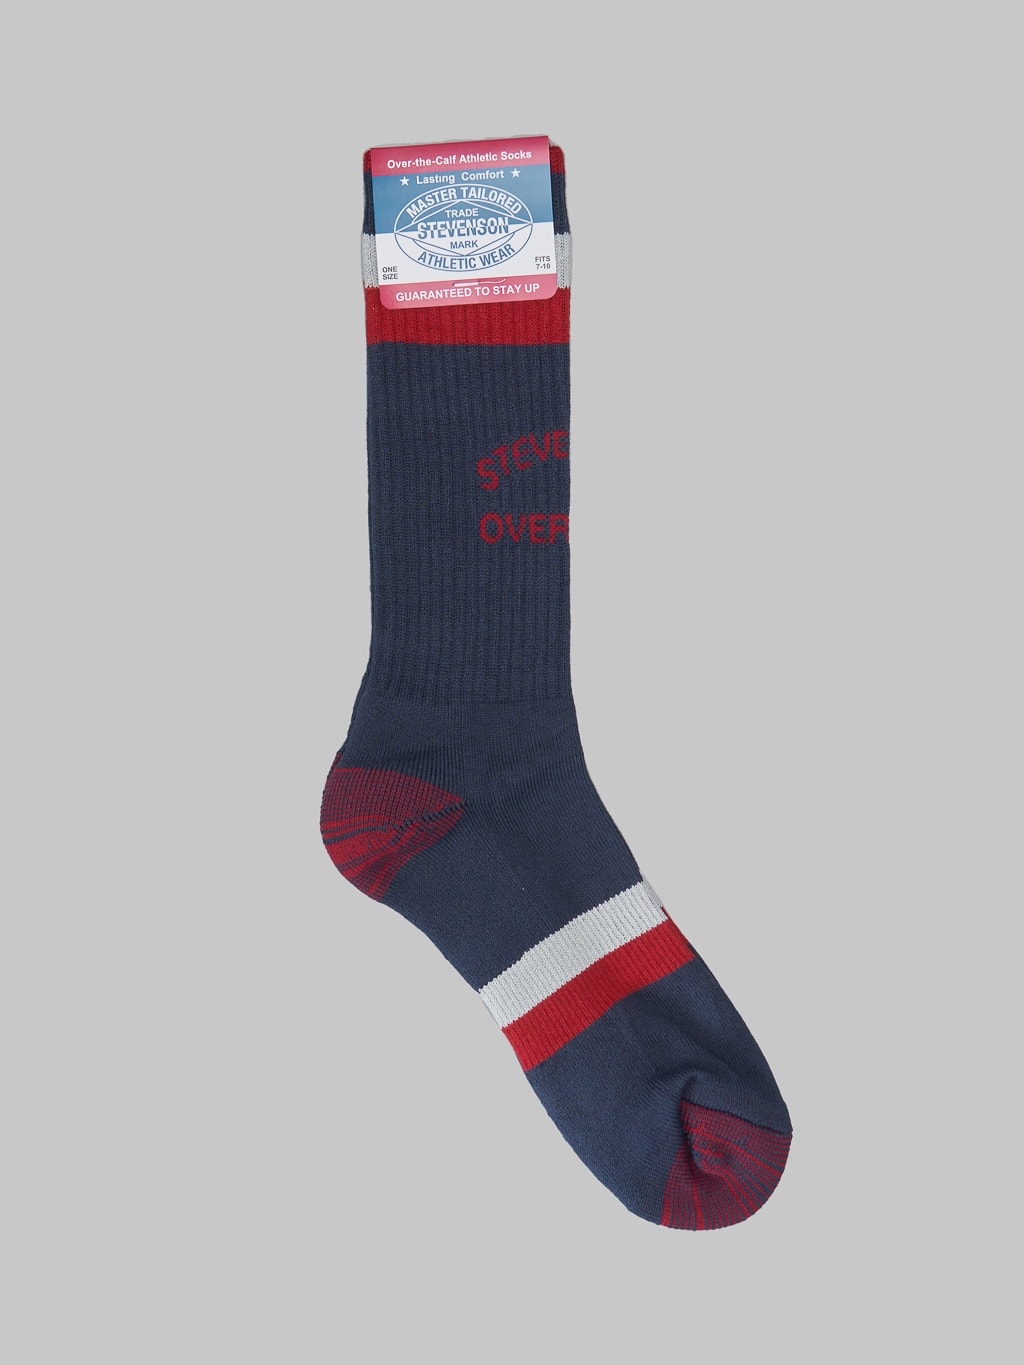 Stevenson Overall Co. Athletic Socks Navy